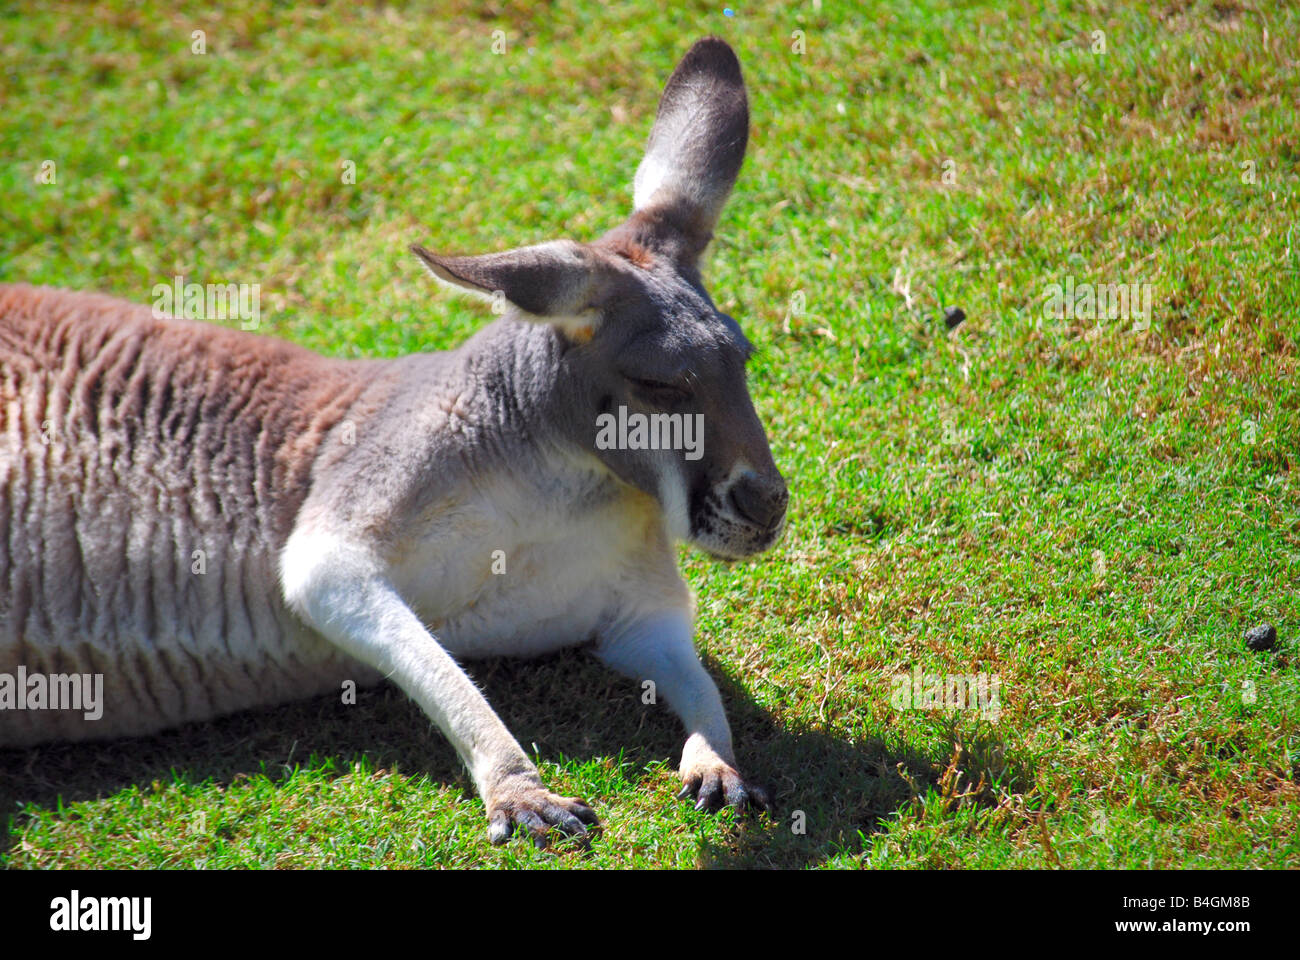 close up image of a relaxing kangaroo Stock Photo